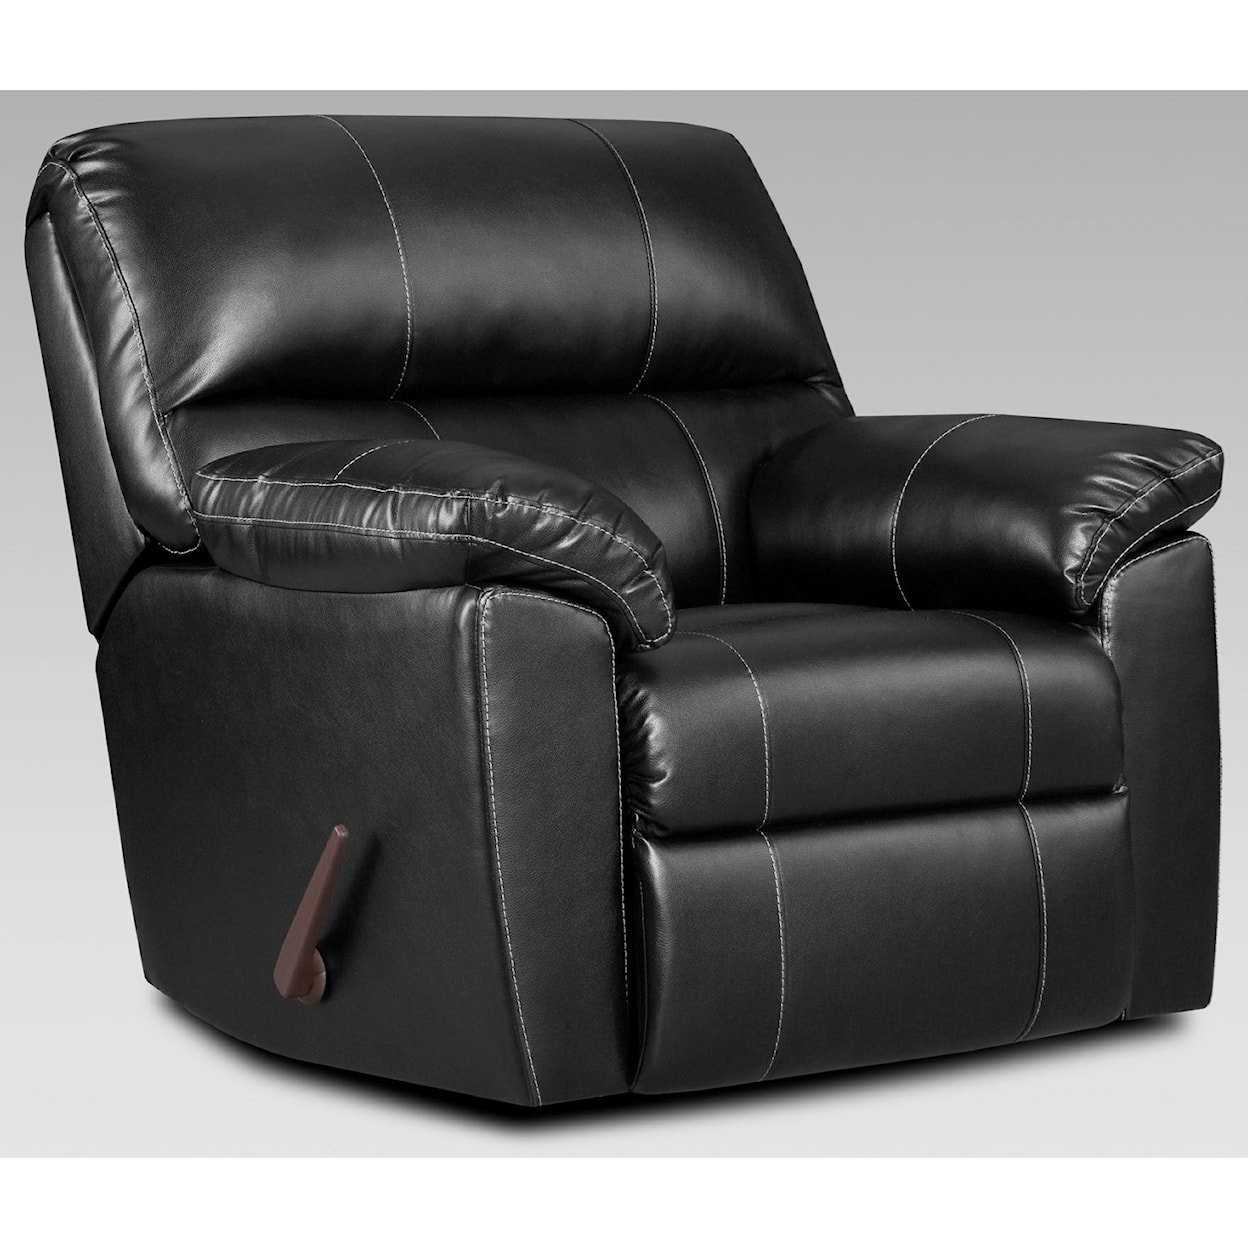 Affordable Furniture 5600 EASTON BLACK RECLINER |